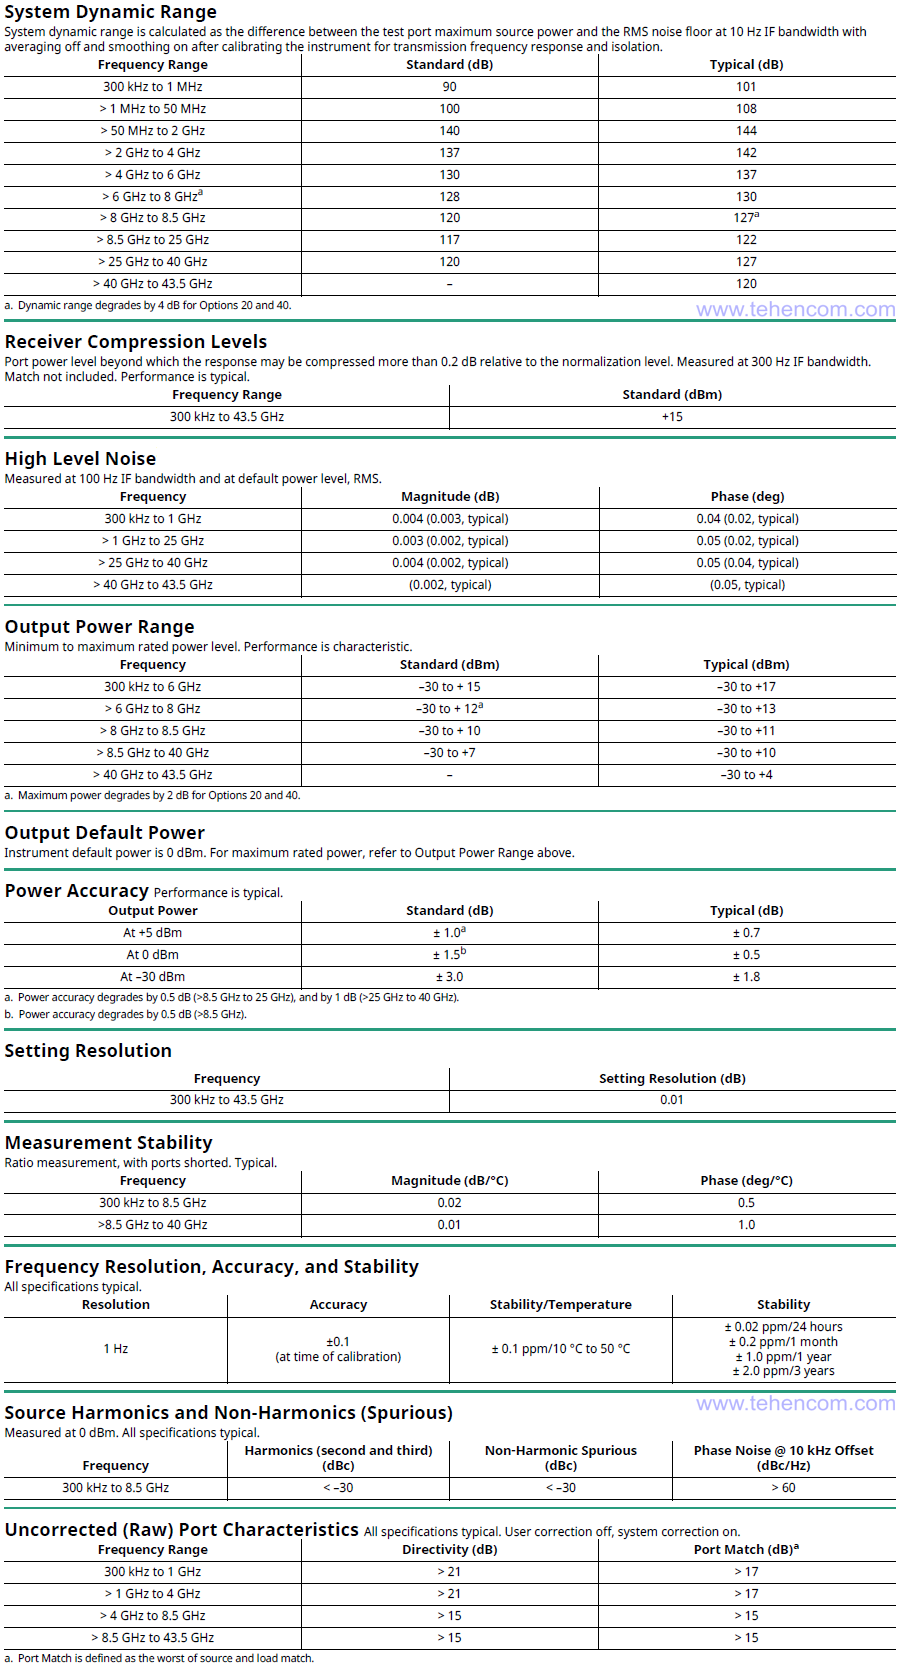 Технічні характеристики 4-х портових векторних аналізаторів ланцюгів Anritsu MS46524B (моделі: Anritsu MS46524B-010, MS46524B-020 та MS46524B-040)